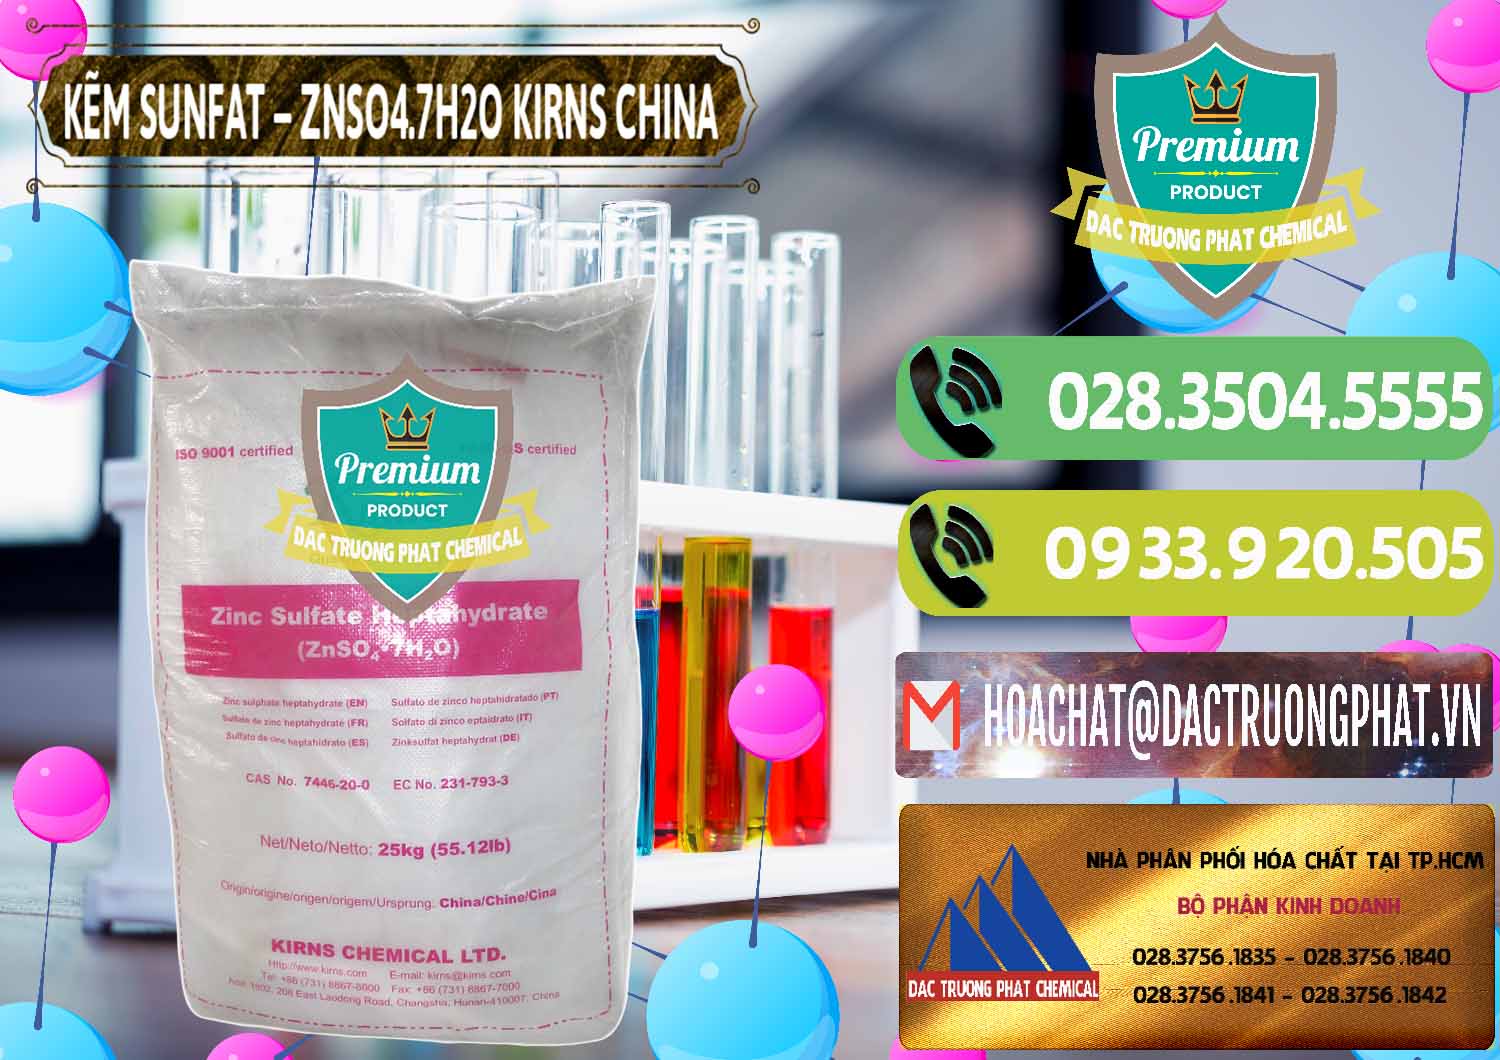 Chuyên cung cấp và bán Kẽm Sunfat – ZNSO4.7H2O Kirns Trung Quốc China - 0089 - Cty chuyên bán _ phân phối hóa chất tại TP.HCM - hoachatmientay.vn